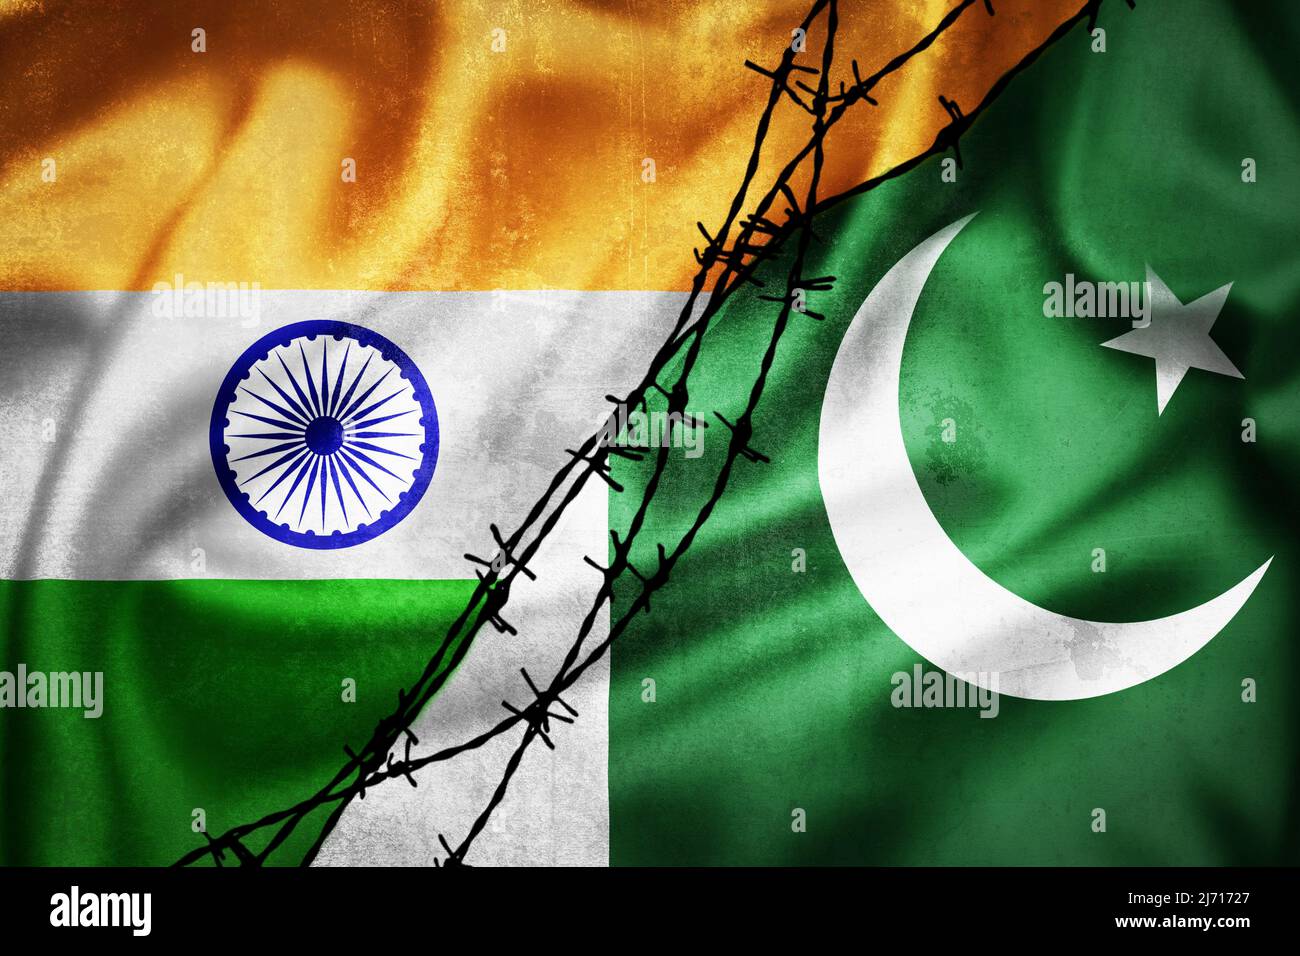 Grunge drapeaux de l'Inde et du Pakistan divisé par l'illustration barbelée, concept de relations tendues entre l'Inde et le Pakistan Banque D'Images